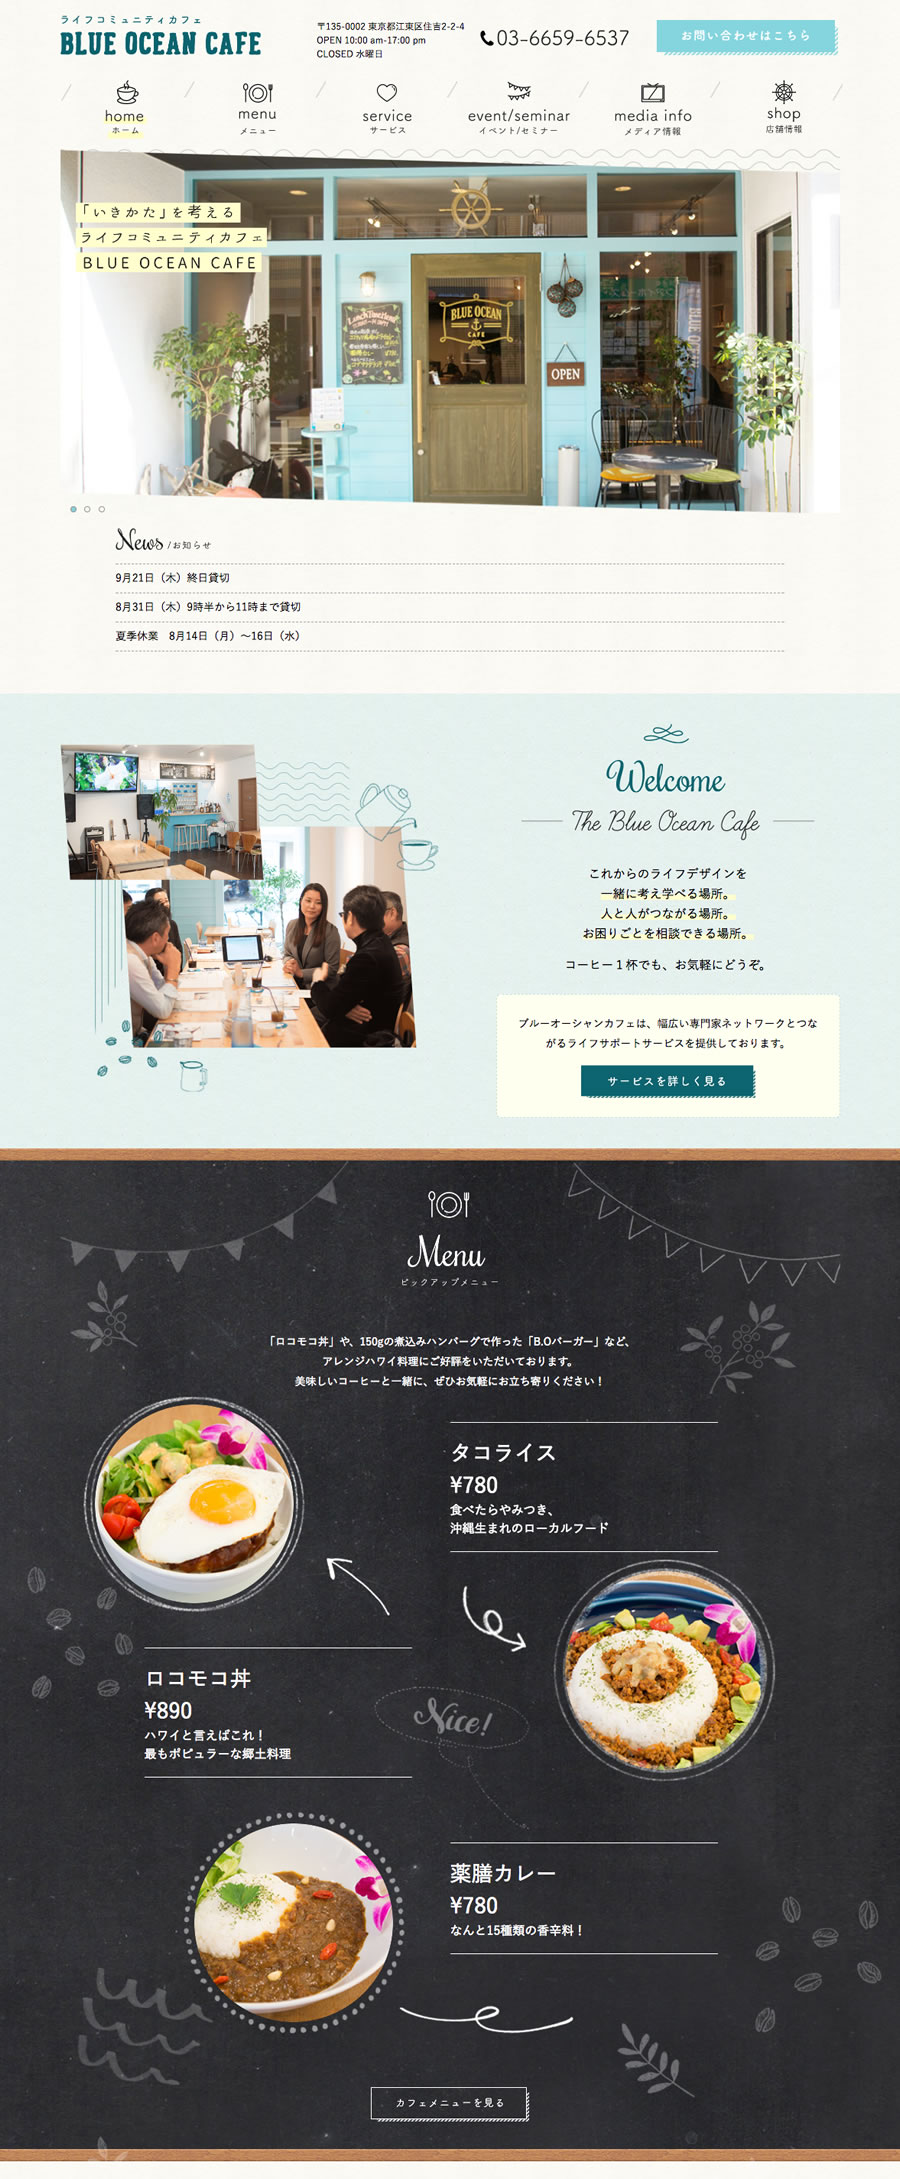 Blue Ocean Cafe Web Site Catalog Renewal 株式会社ジュニ